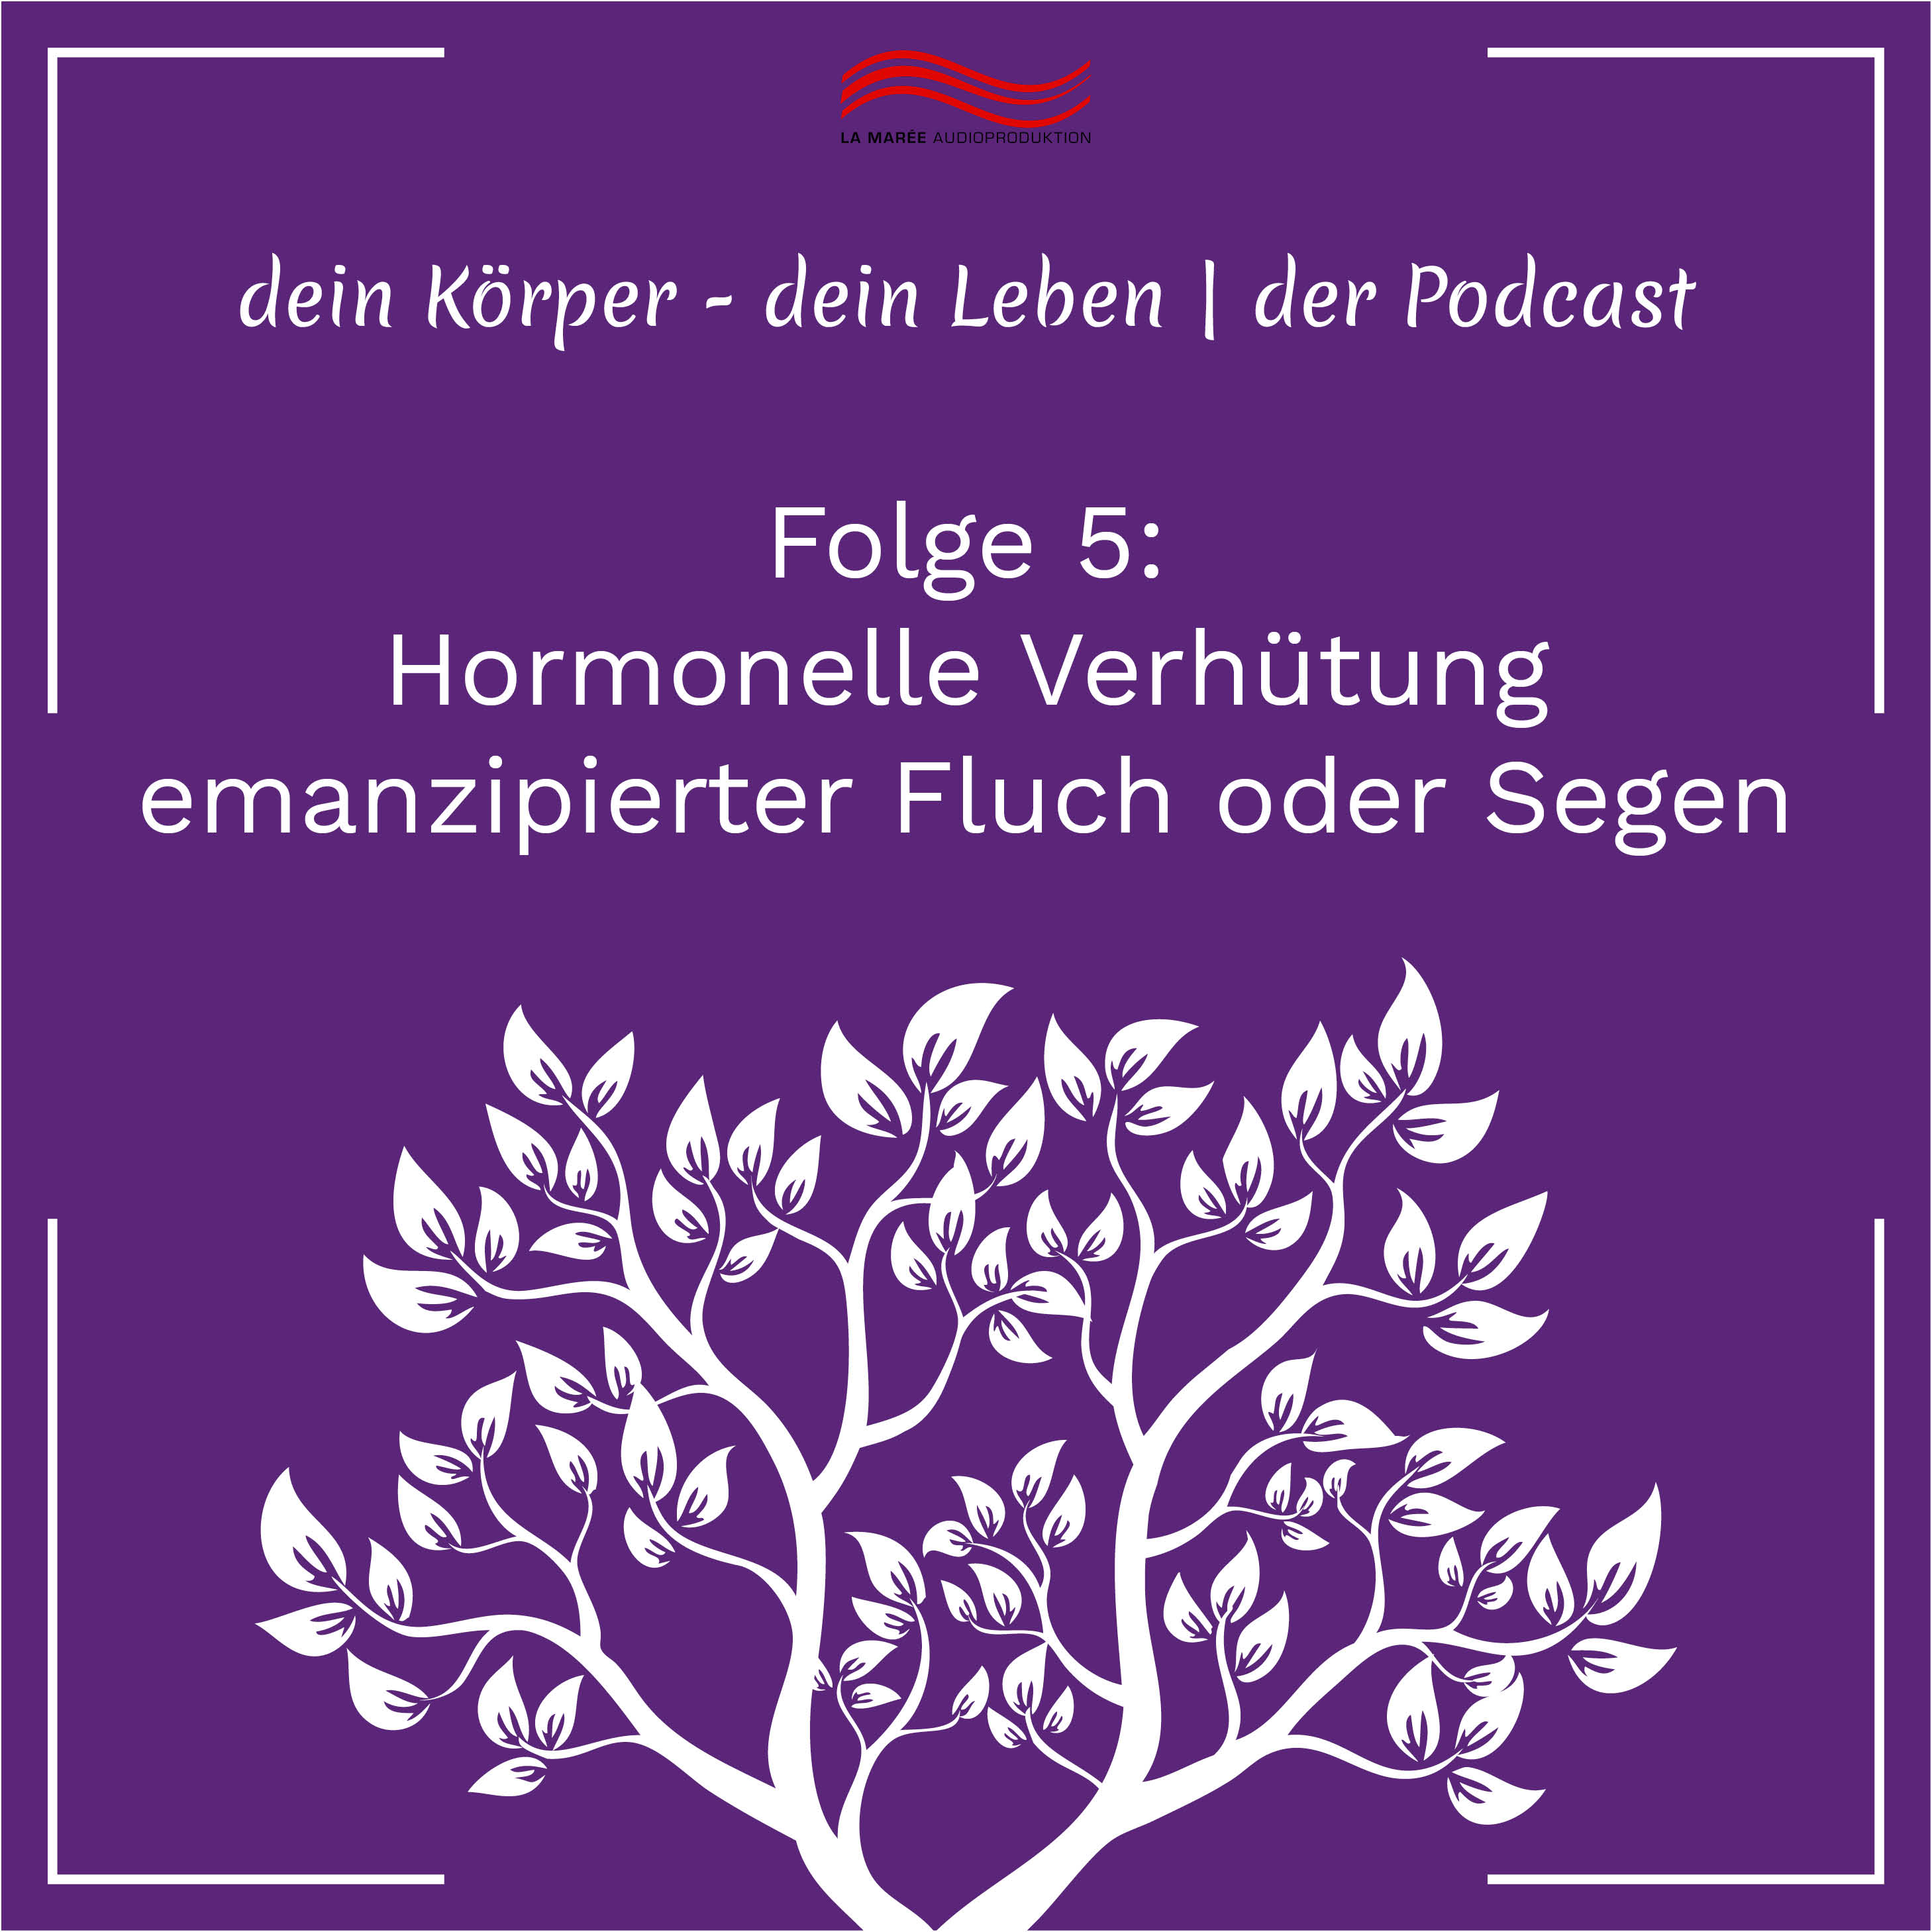 [Podcast] Hormonelle Verhütung – emanzipierter Fluch oder Segen